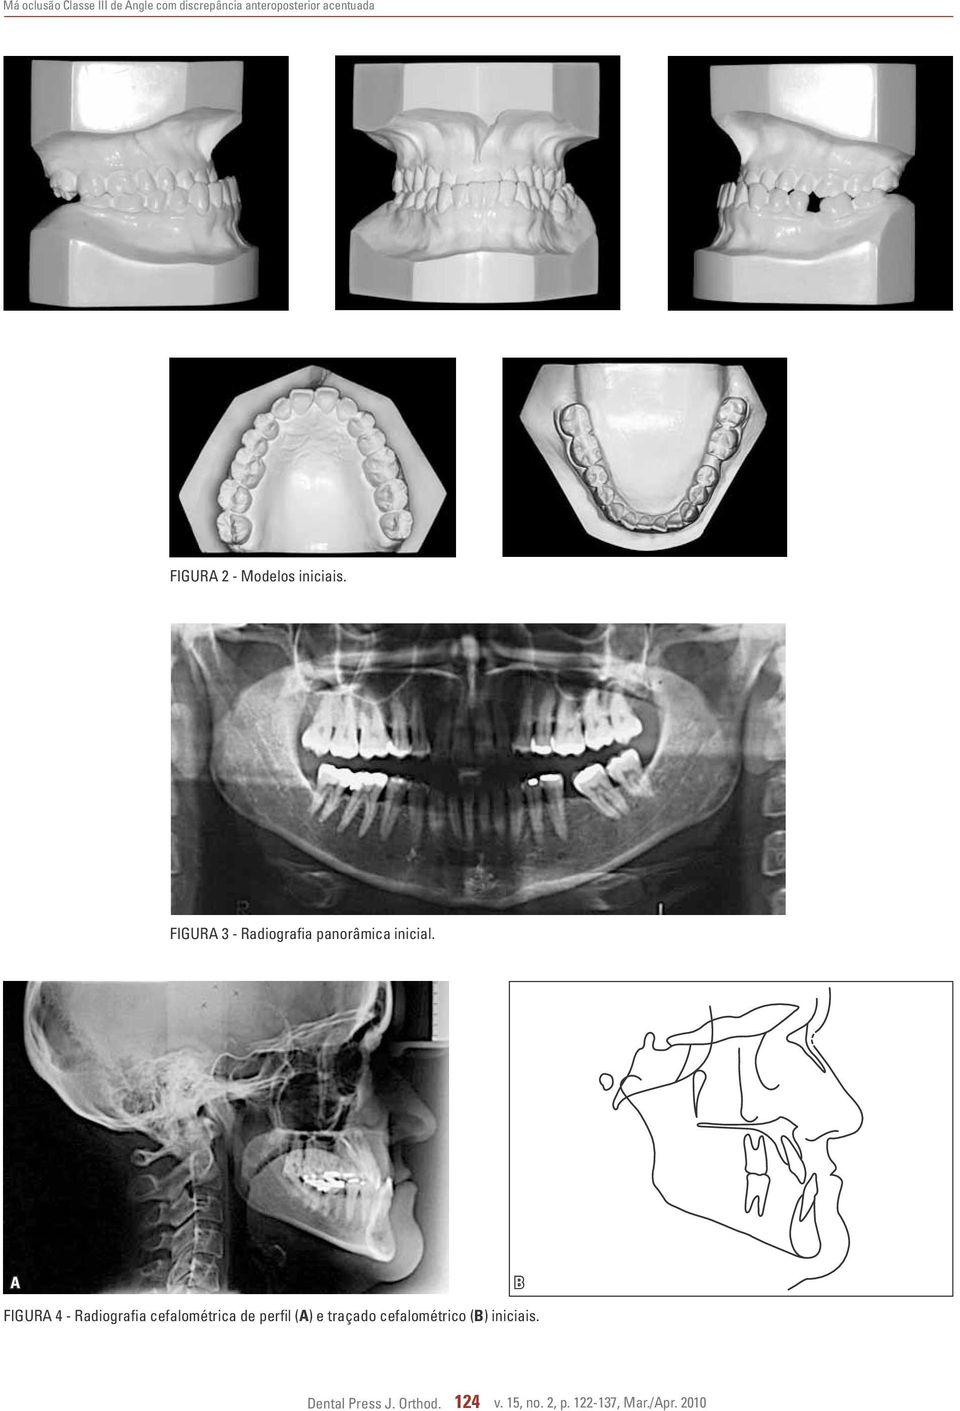 A B FIGURA 4 - Radiografia cefalométrica de perfil (A) e traçado